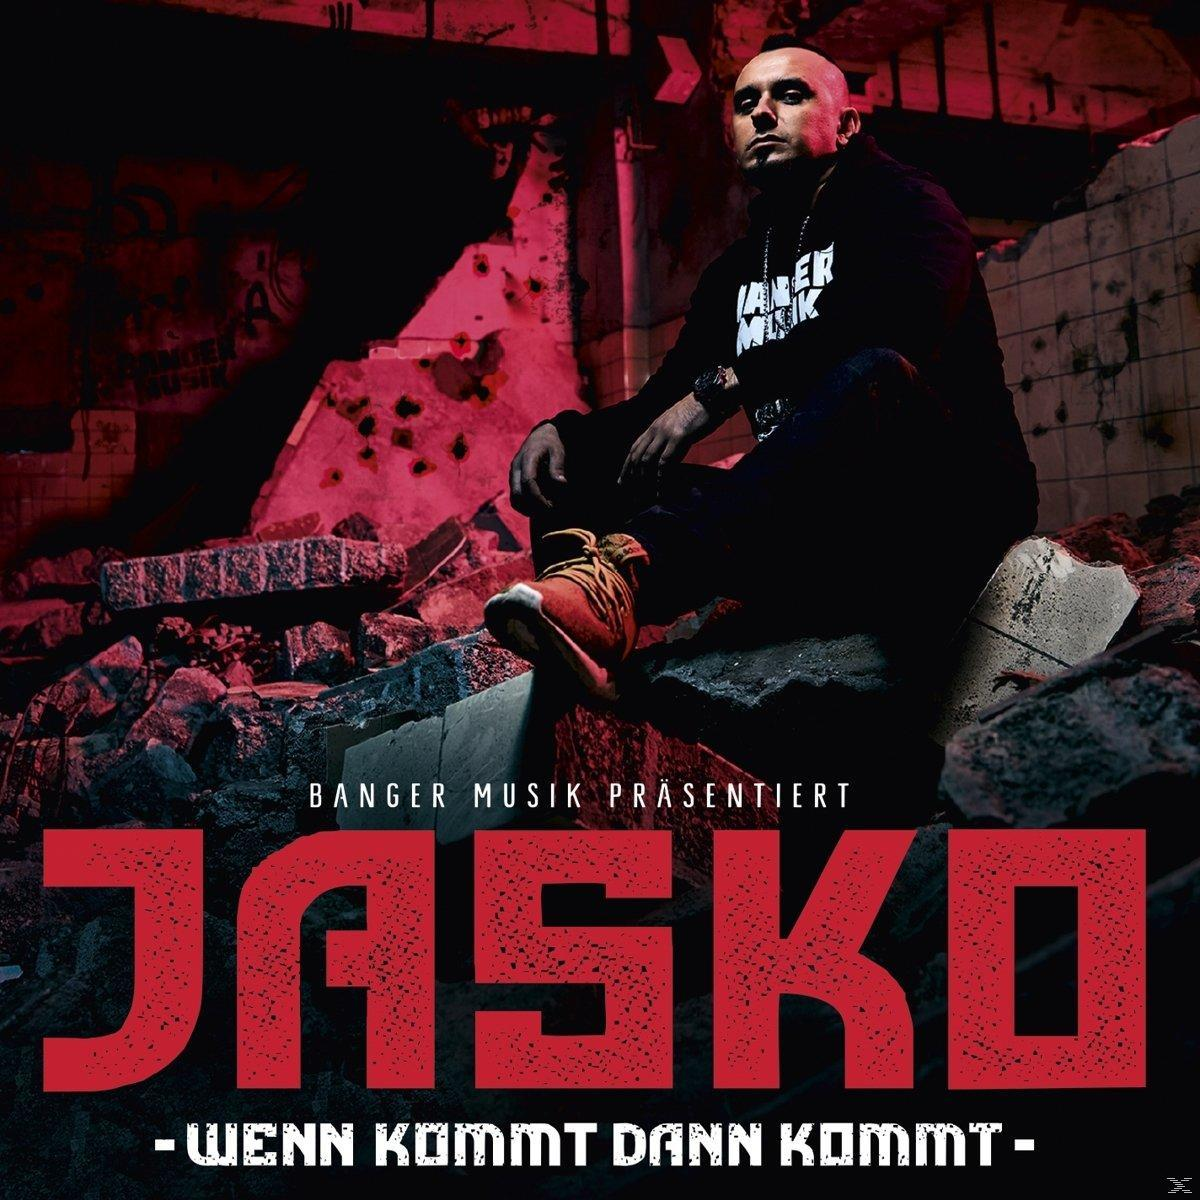 Kommt Wenn Dann Kommt (CD) Jasko - -